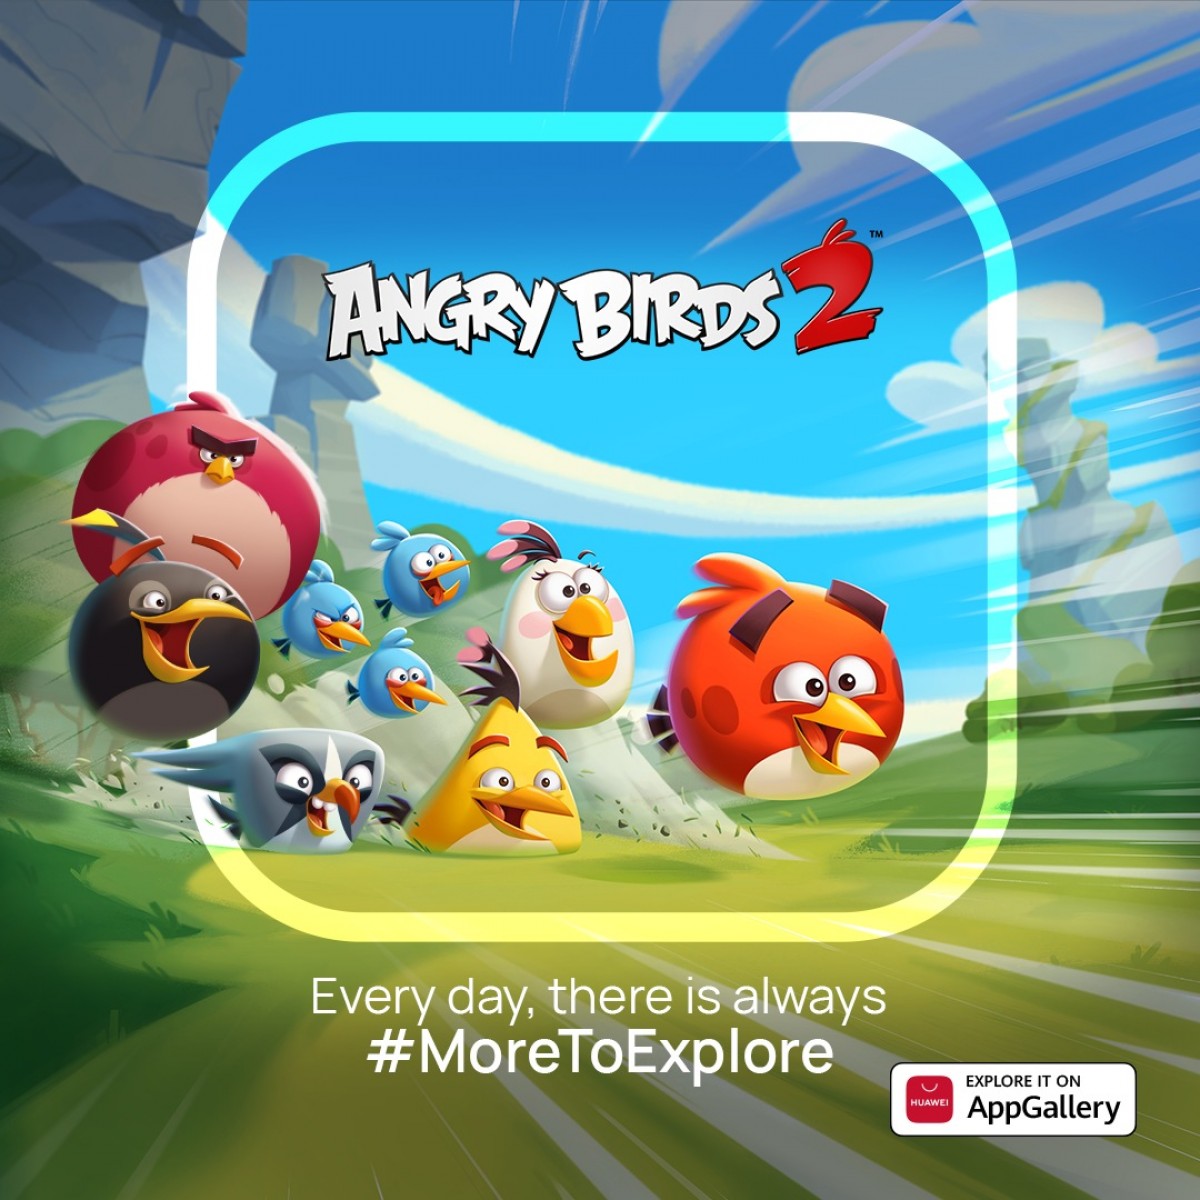 B2630. The Angry Birds Movie 2016 - Những Chú Chim Giận Dữ 2D25G (DTS-HD MA  7.1) nocinavia - Phim mới - Blu-ray 2D - Blu-ray Online